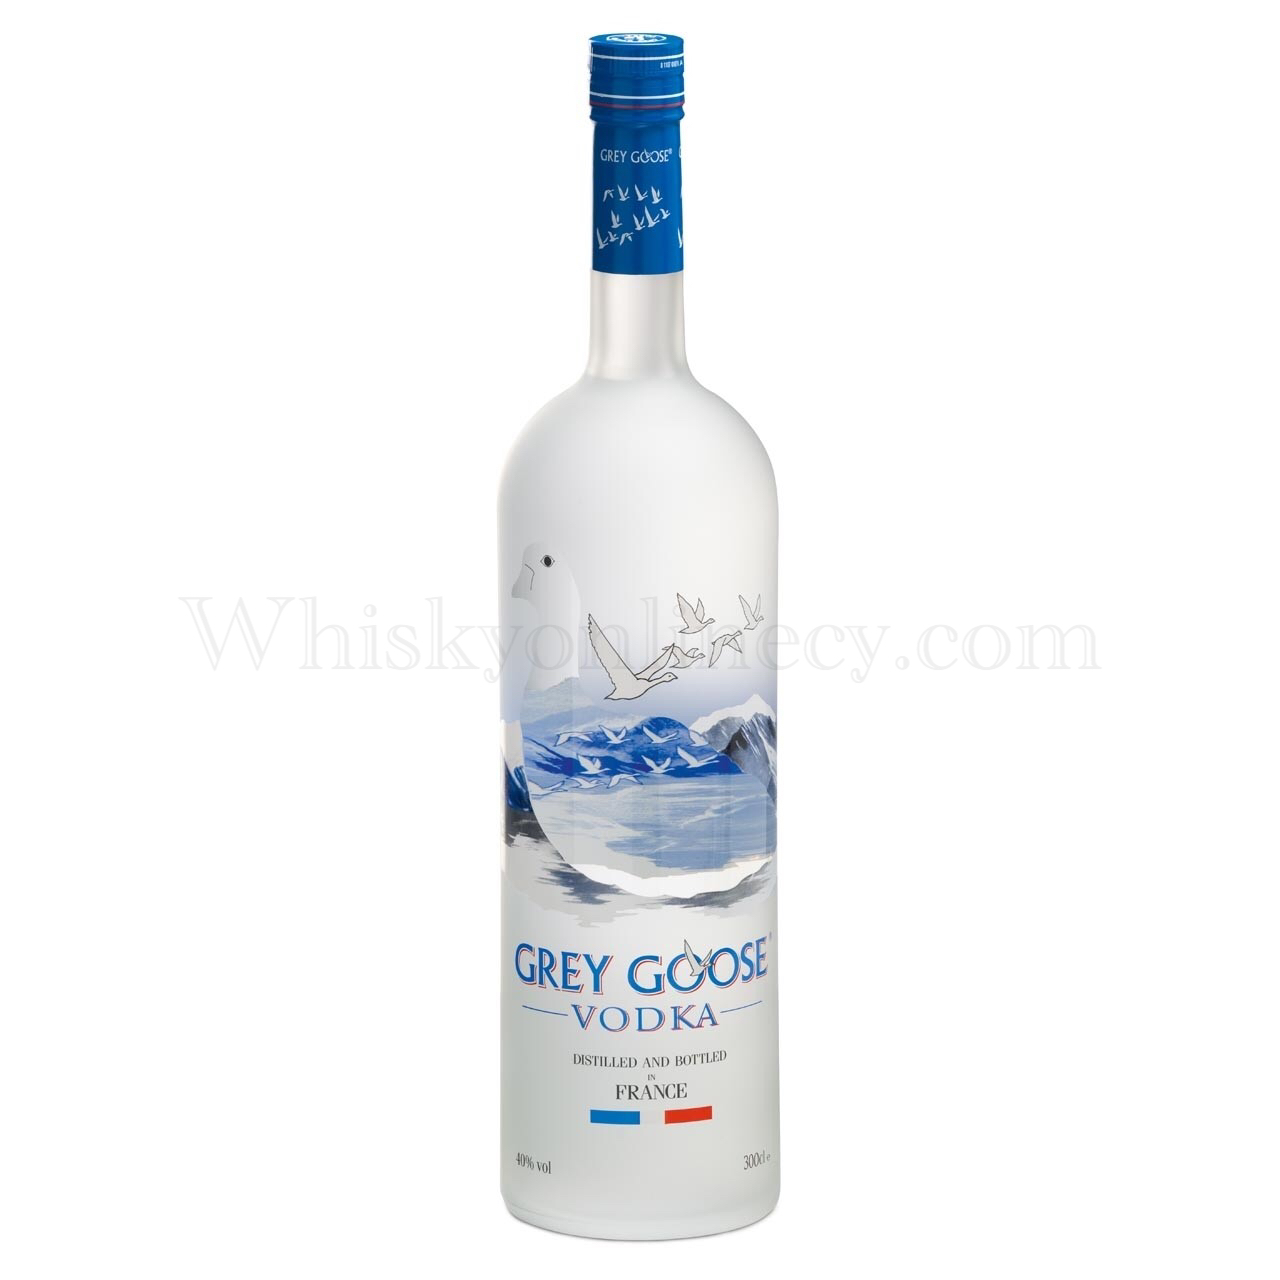 Whisky Online Cyprus - Grey Goose Vodka (3L, 40%)